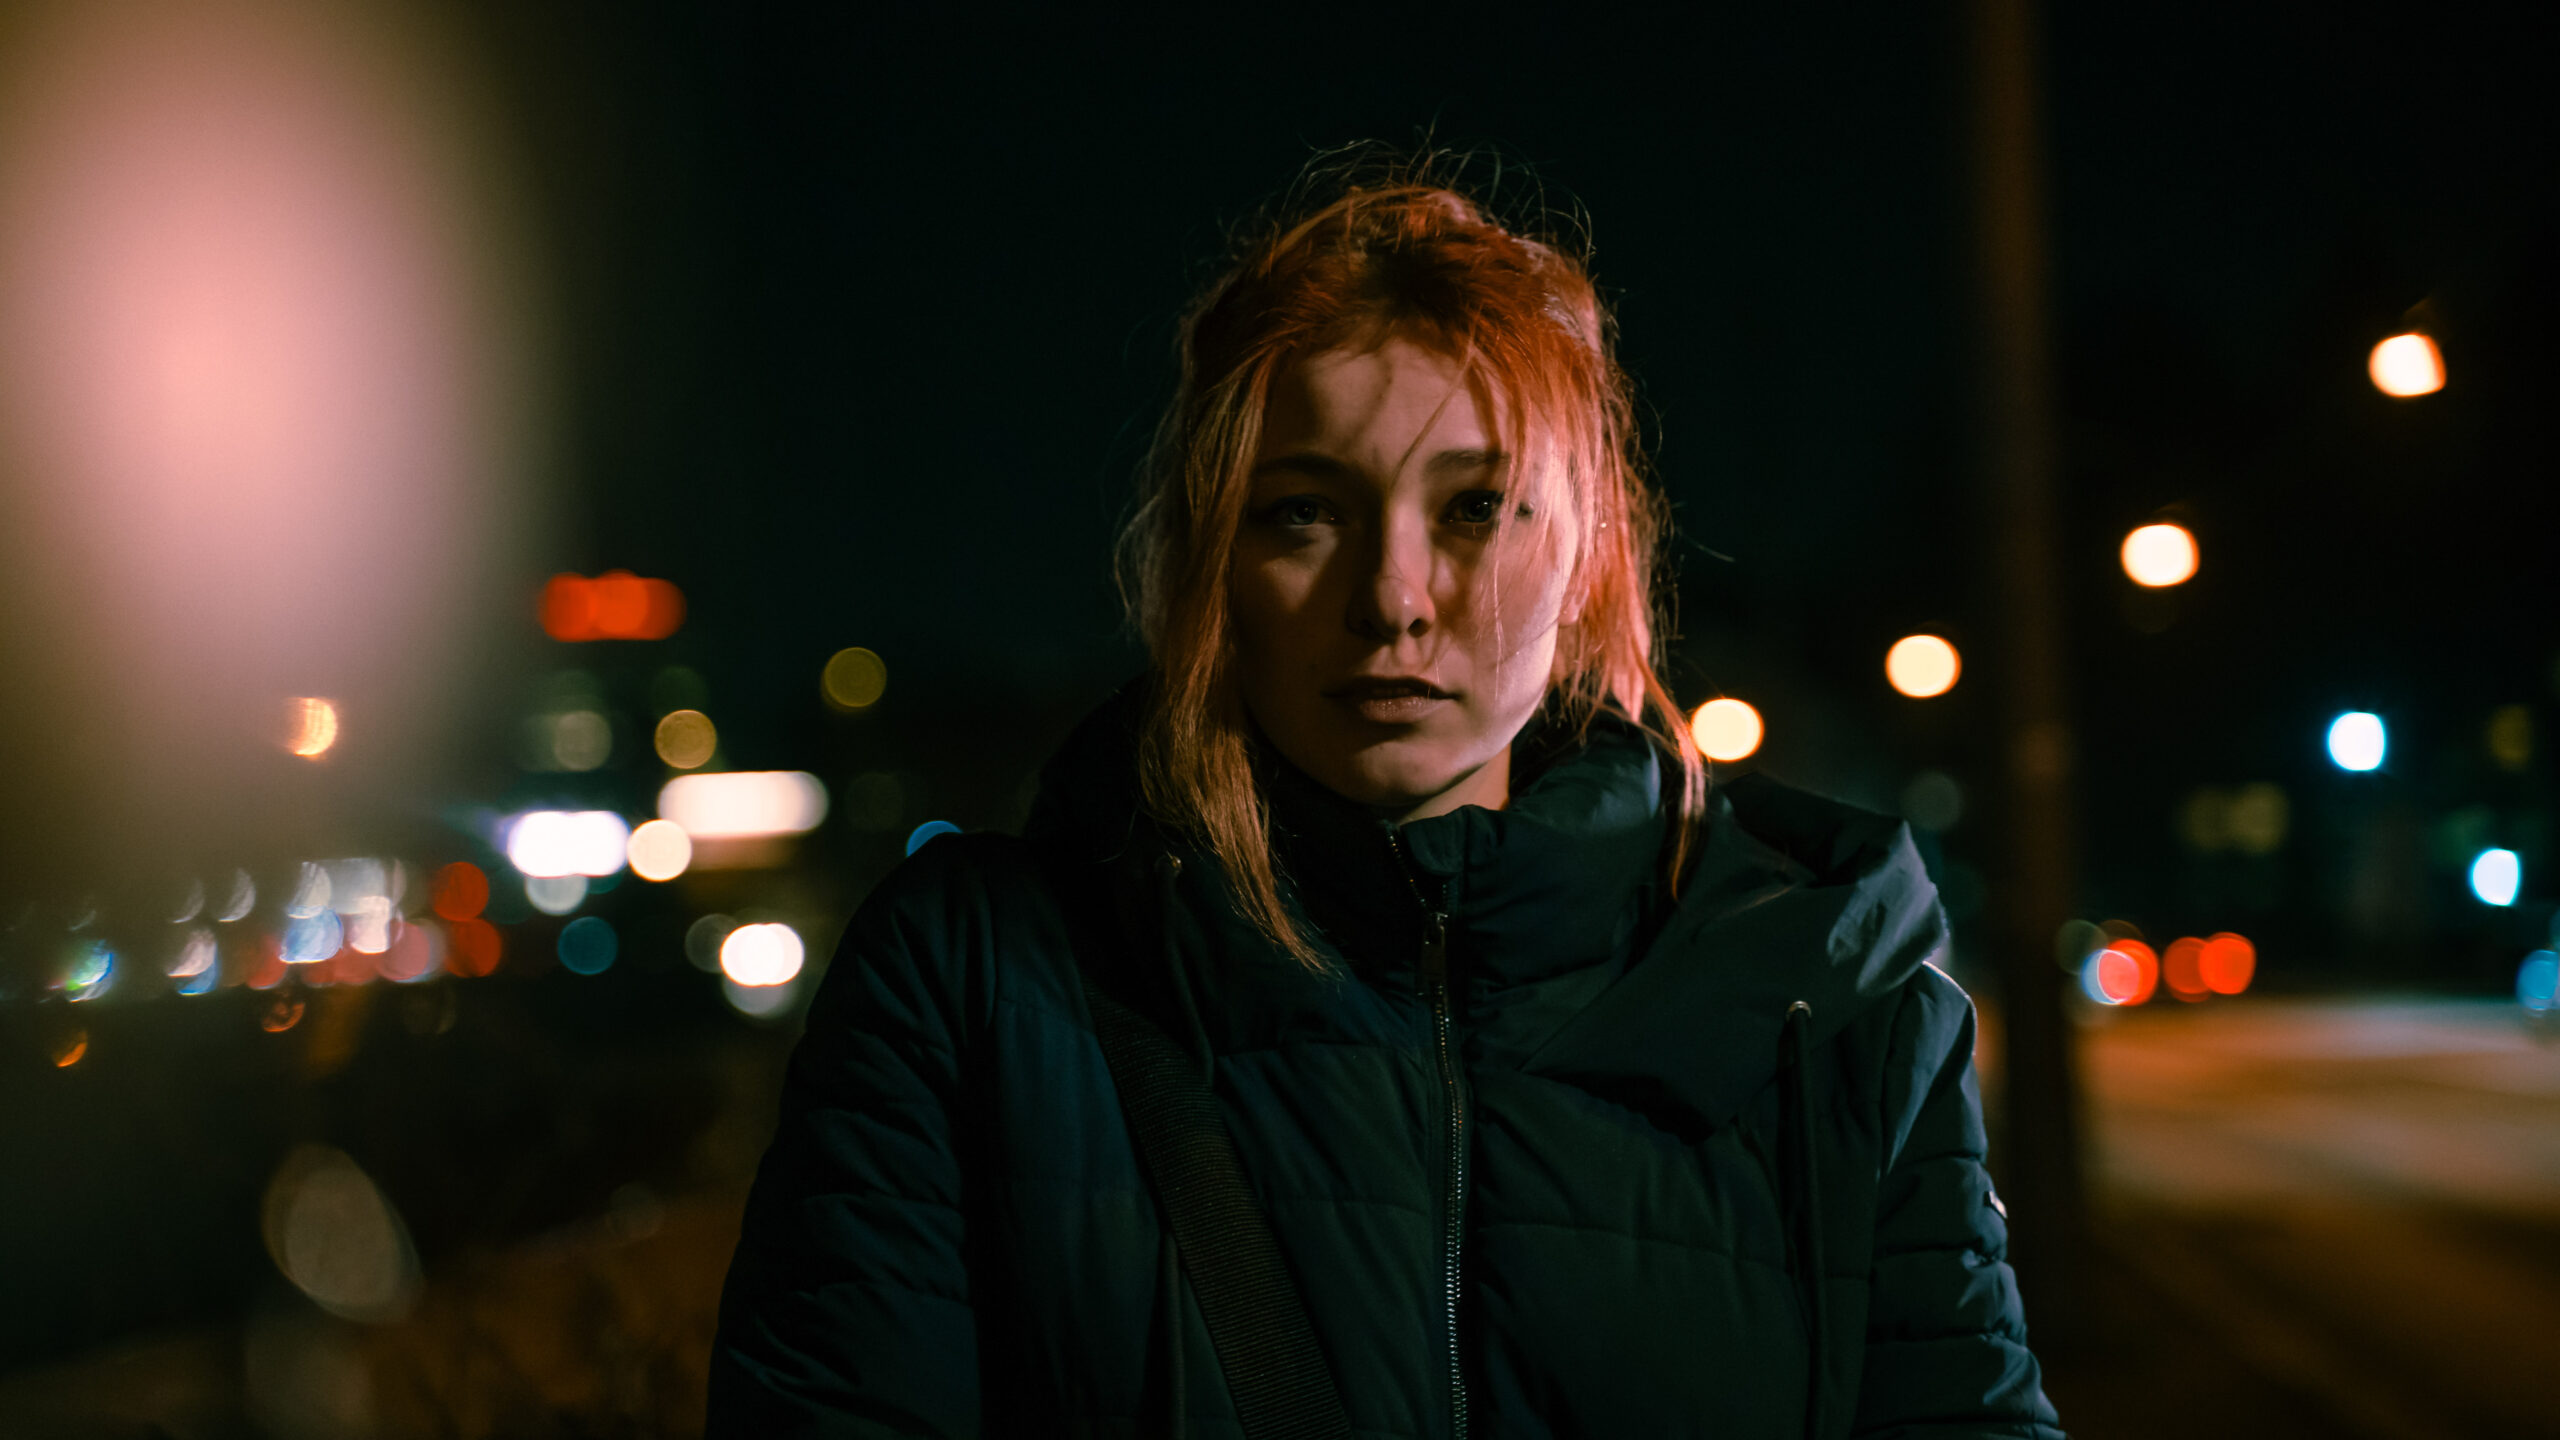 Jorinde Fritsch steht auf einer Straße bei Nacht. Das Filmstill ist sehr düster und nur die Person ist wirklich im Fokus.